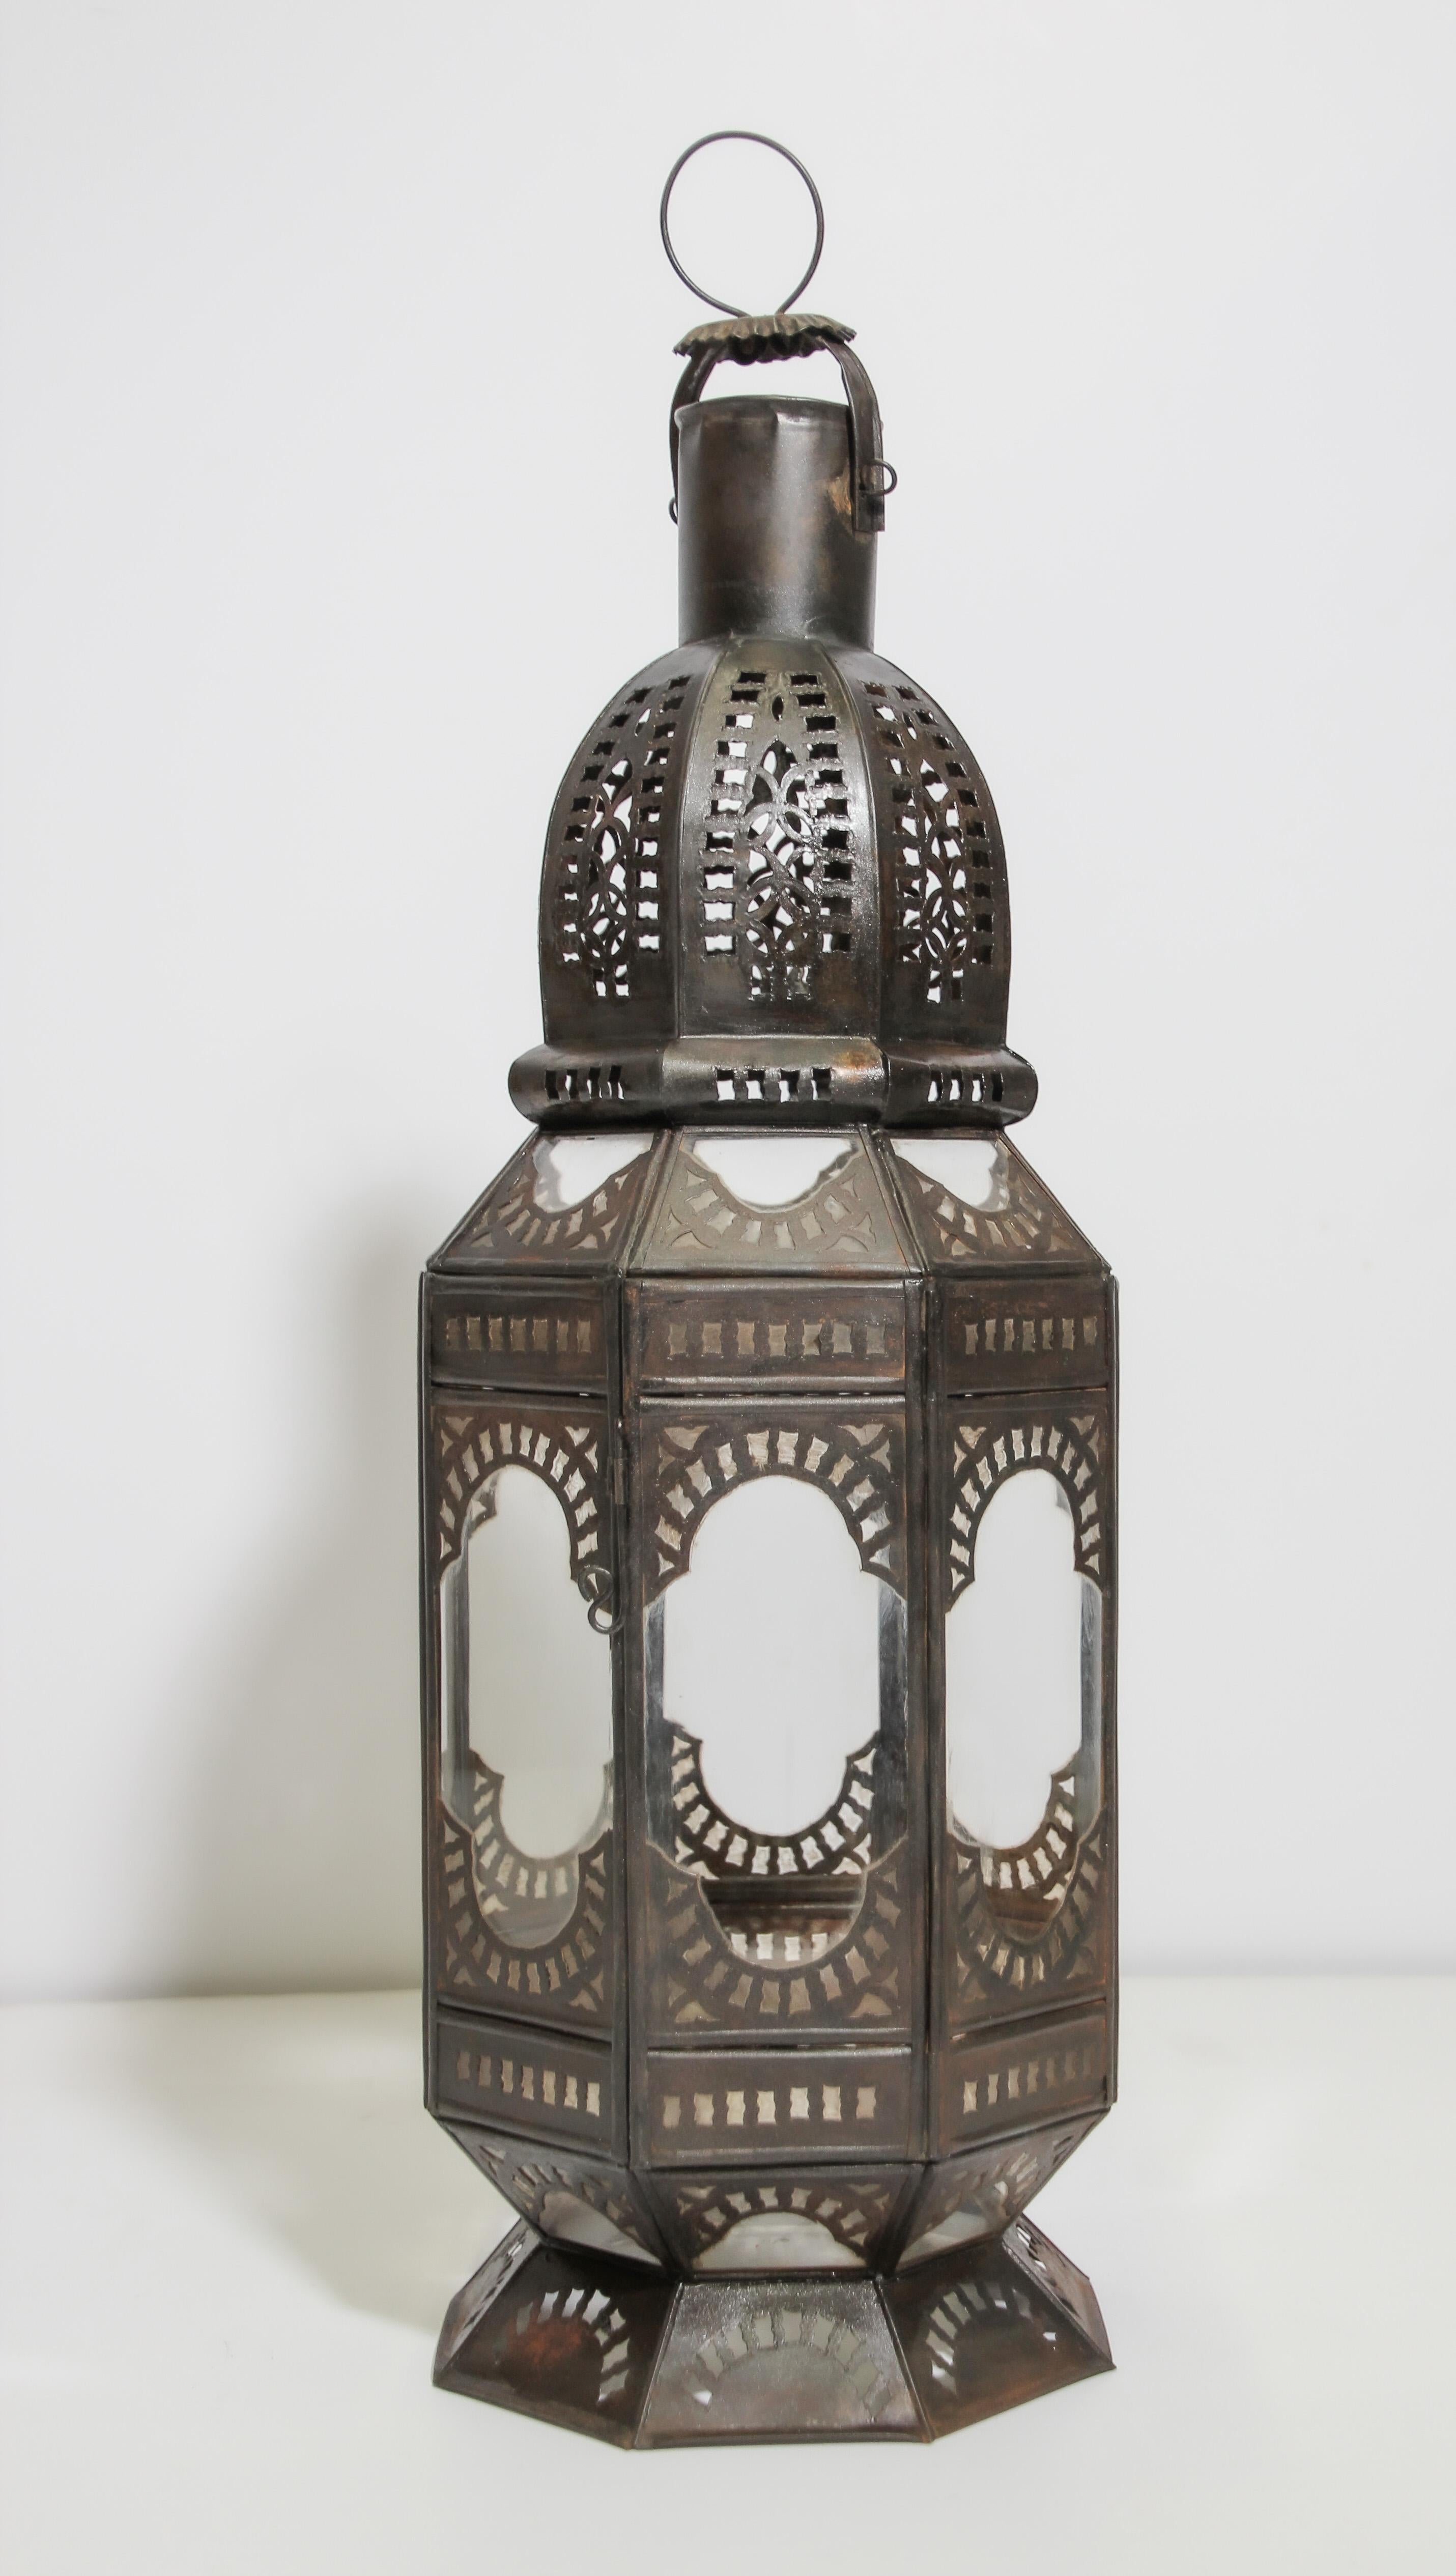 Lanterne marocaine artisanale en verre transparent de forme octogonale ornée de motifs mauresques filigranés en métal découpé à la main. Lampe à bougie ouragan en métal ouvert avec verre transparent. Une petite porte permet d'accéder à l'intérieur.